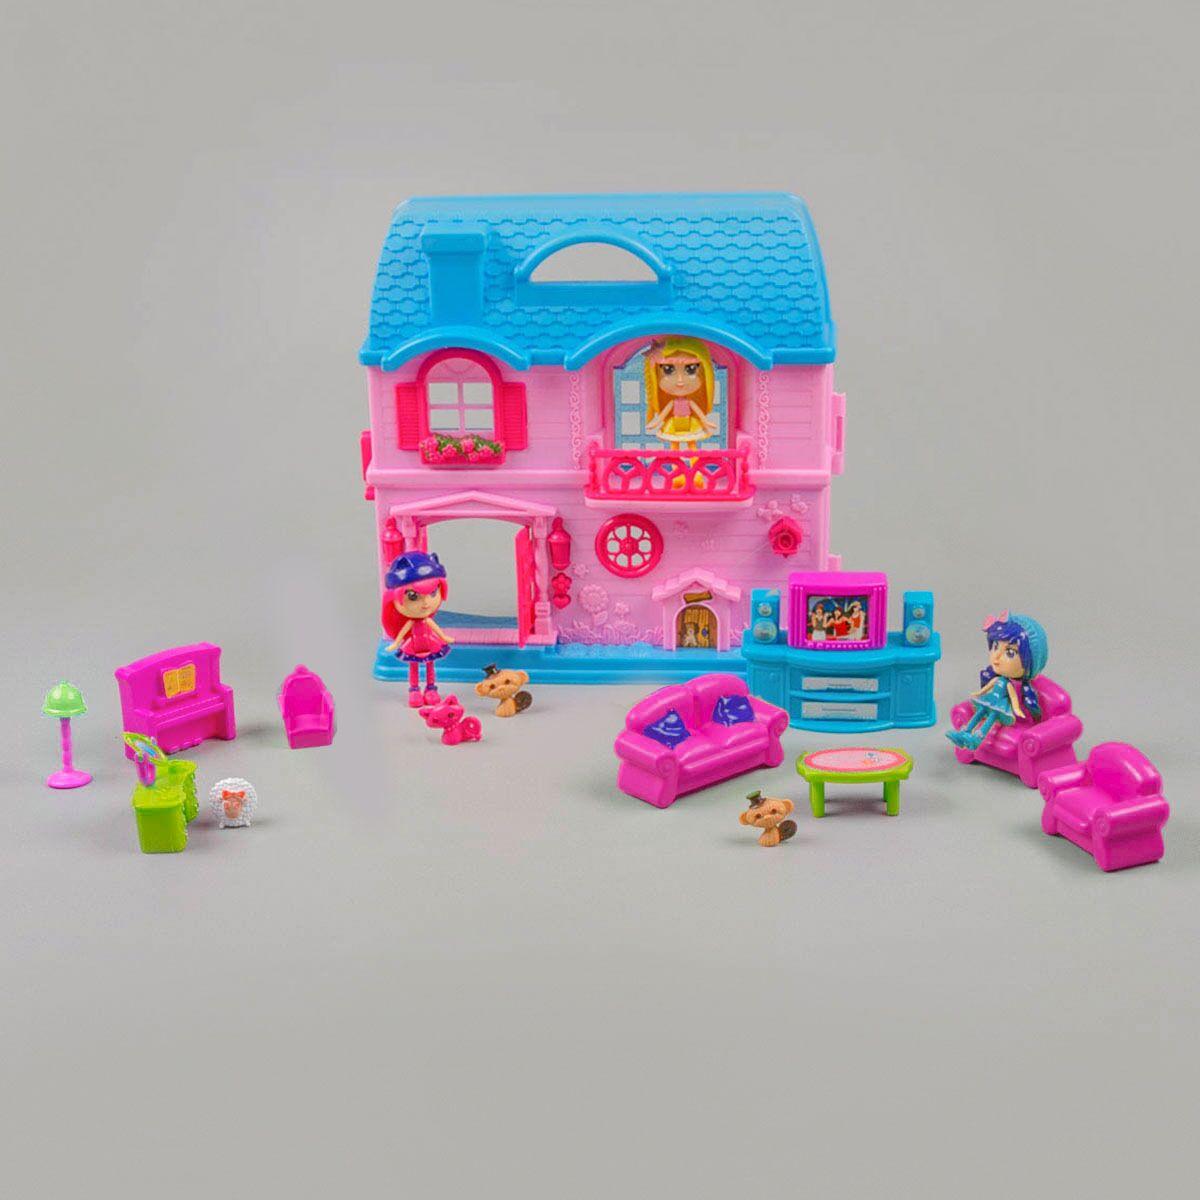 Игровой набор кукольный домик со светом и звуком, мебель, 3 куклы, для девочек/зеленый, фото 1